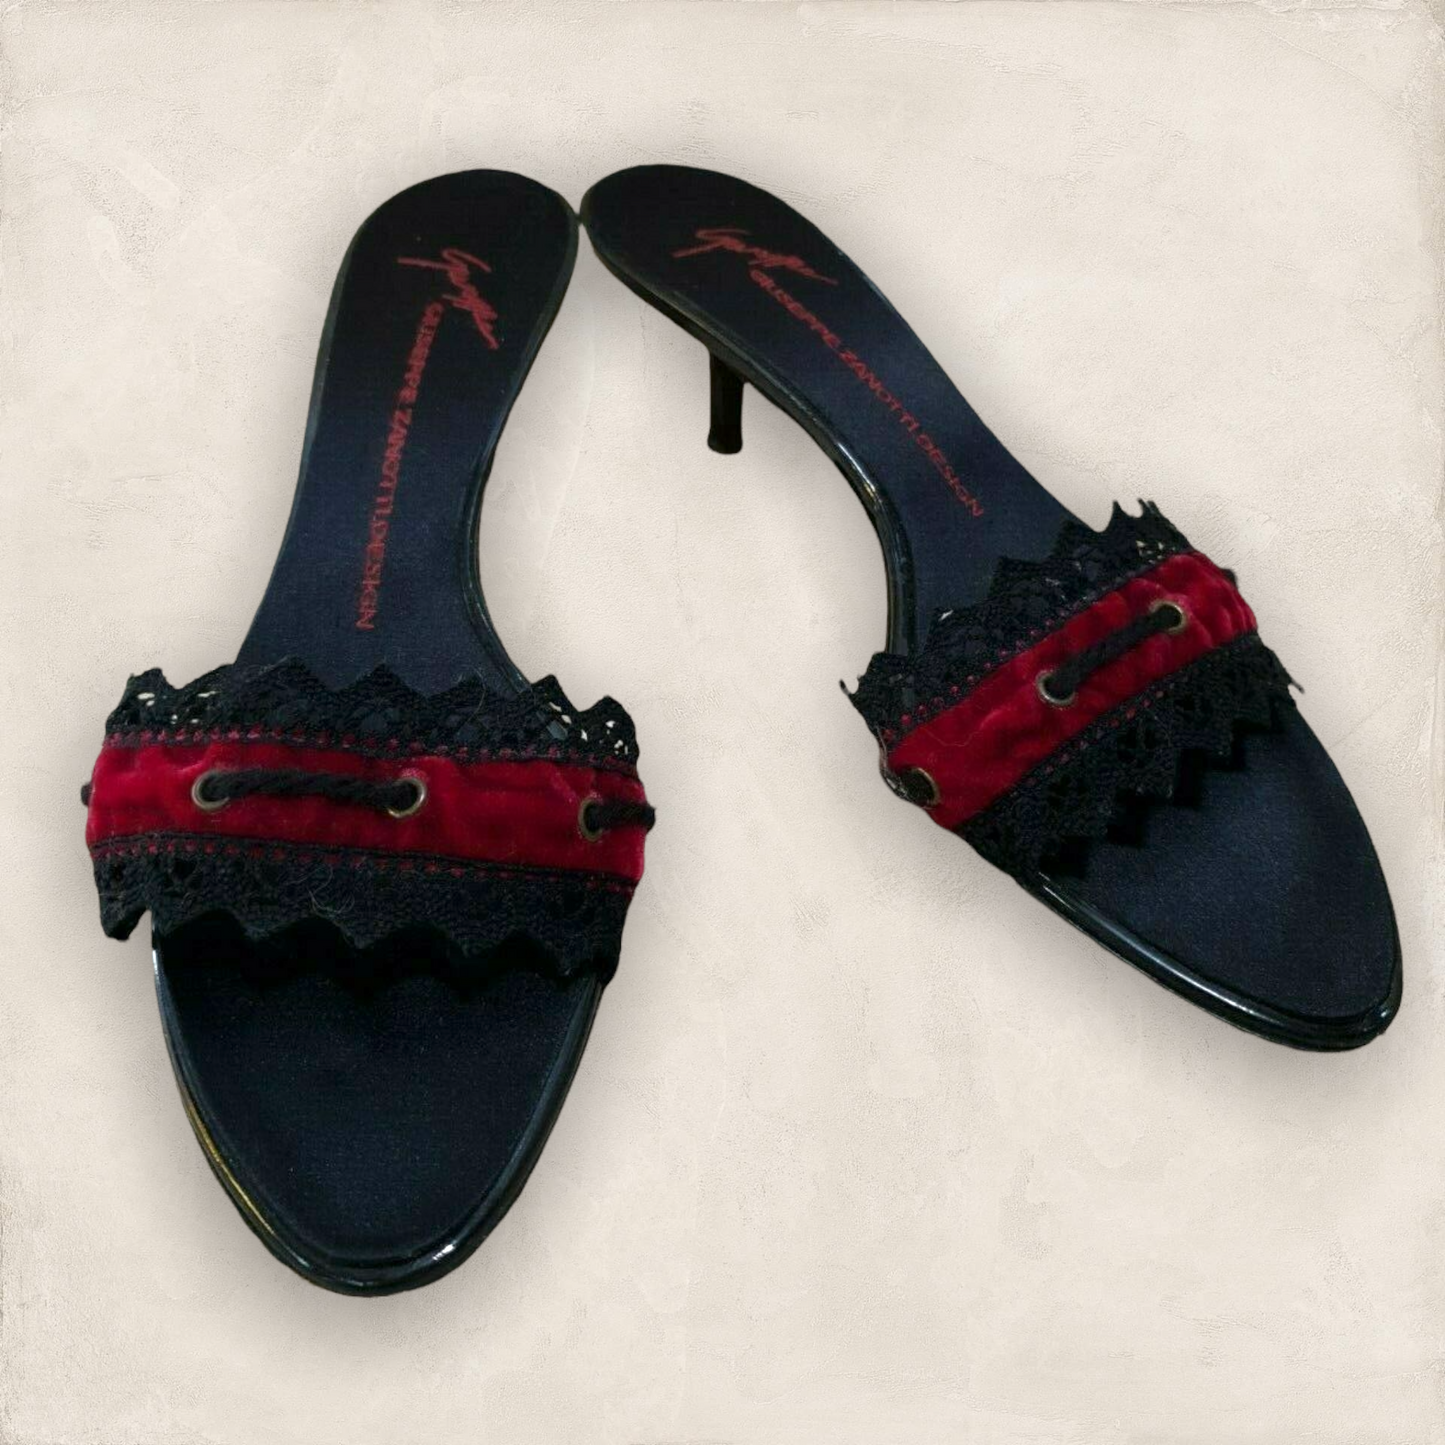 Giuseppe Zanotti Black Kitten Heel Red Velvet Sandals UK 6.5 US 9 EU 40 Timeless Fashions